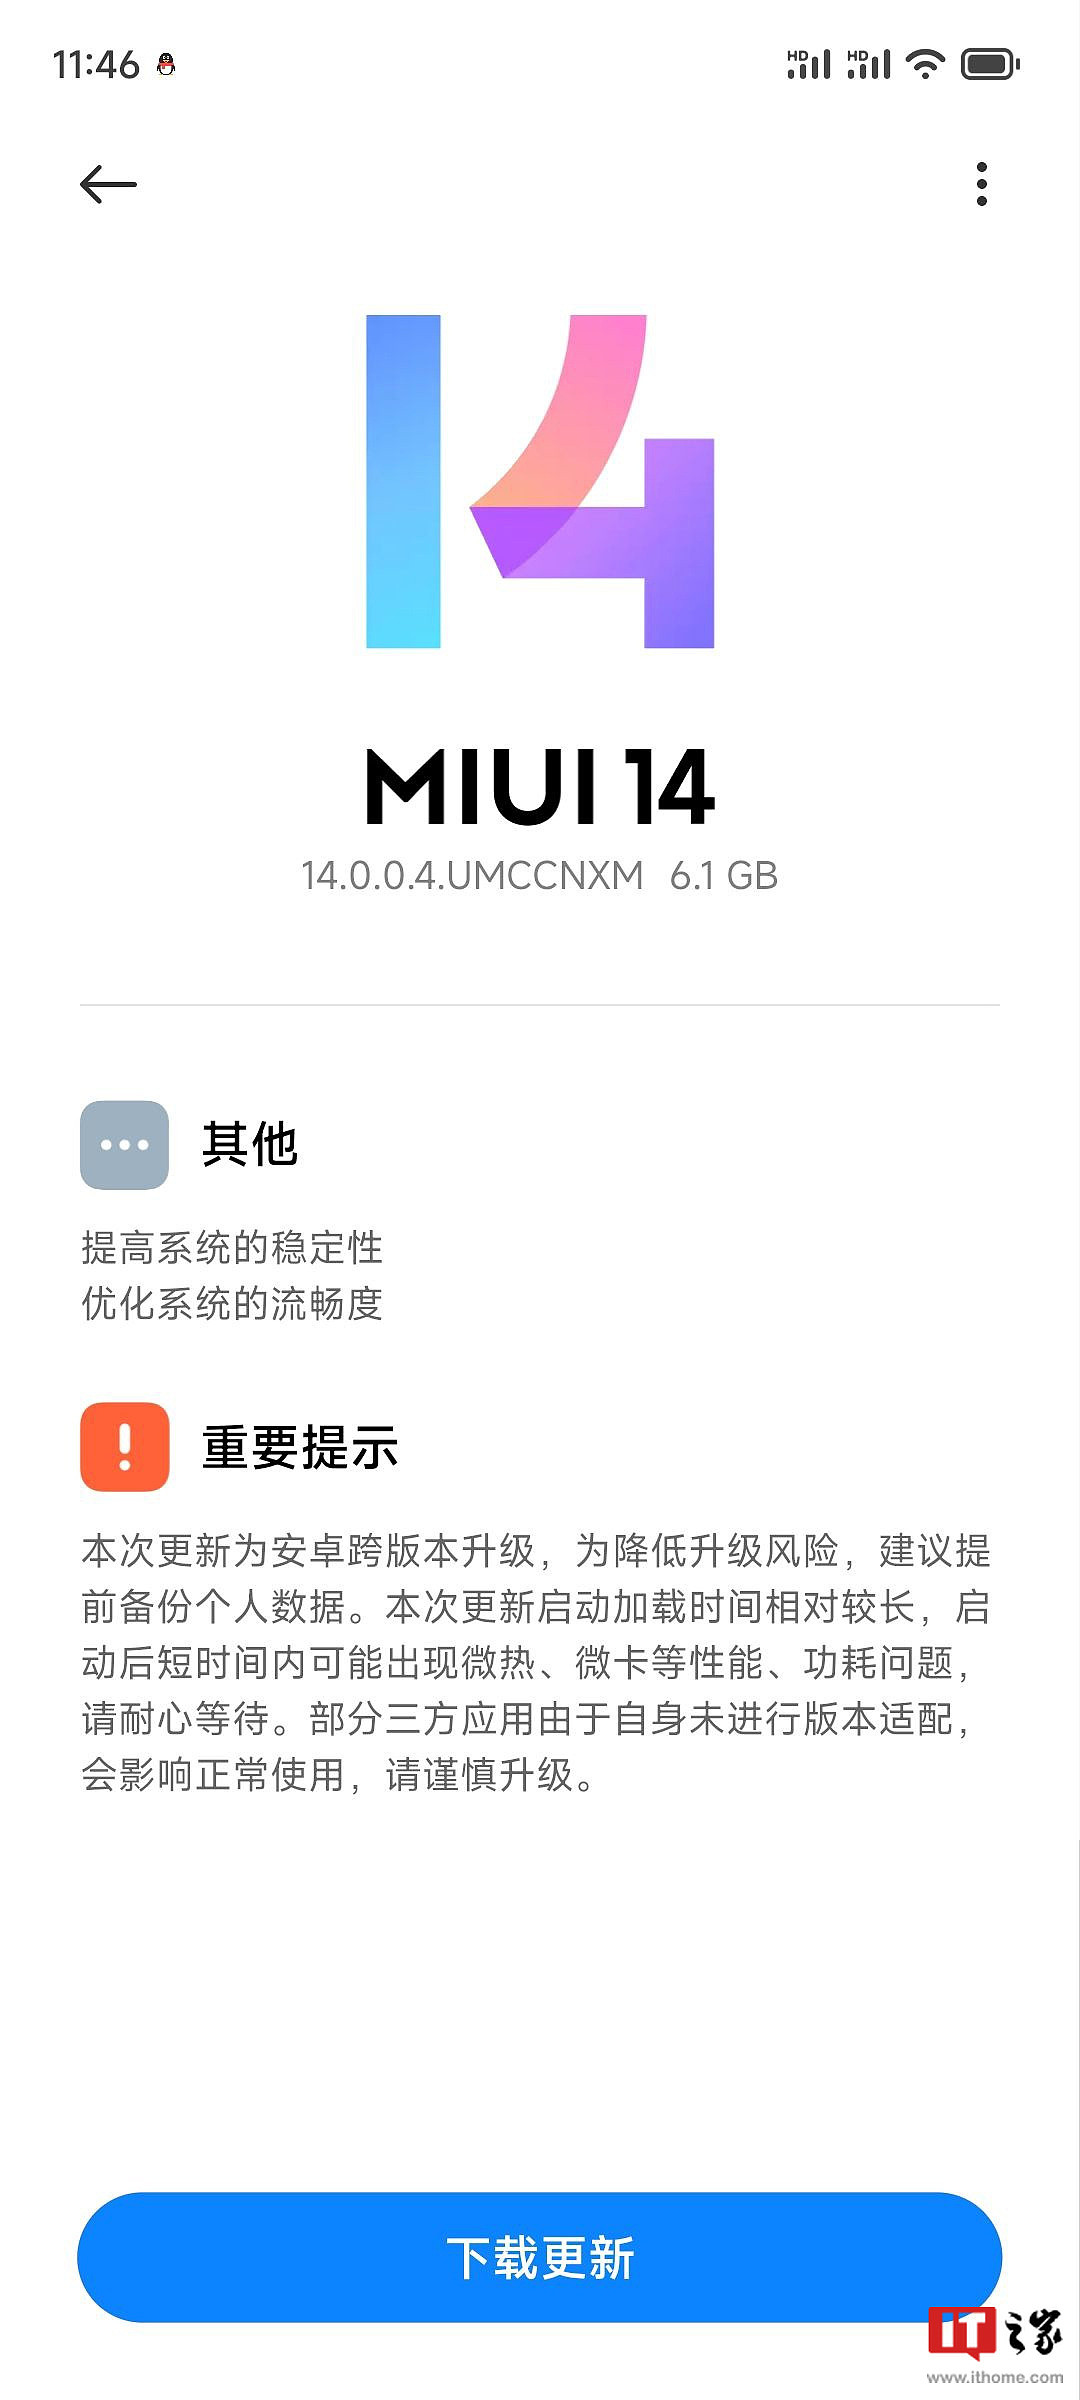 小米 13 手机推送安卓 14 正式版系统更新，更新包大小 6.1GB - 1